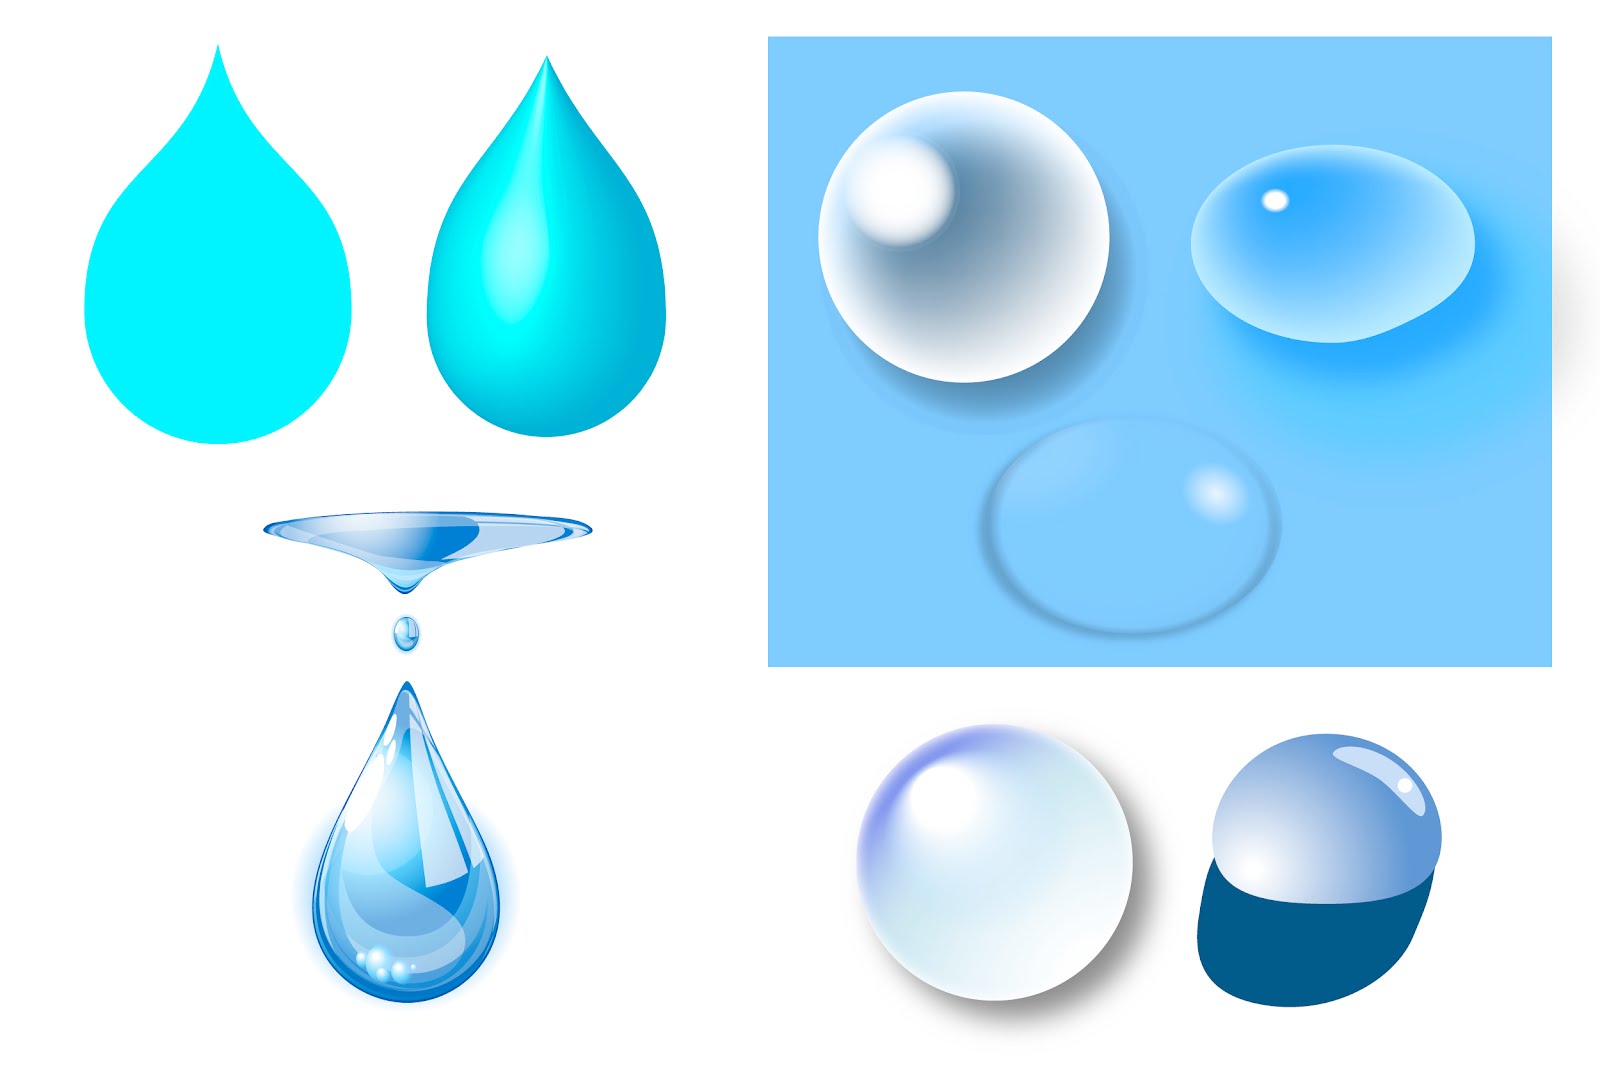 Kdblog 仮 Illustrator 水滴を作りたいときに参考になるtipsやダウンロードサイトをいくつか紹介